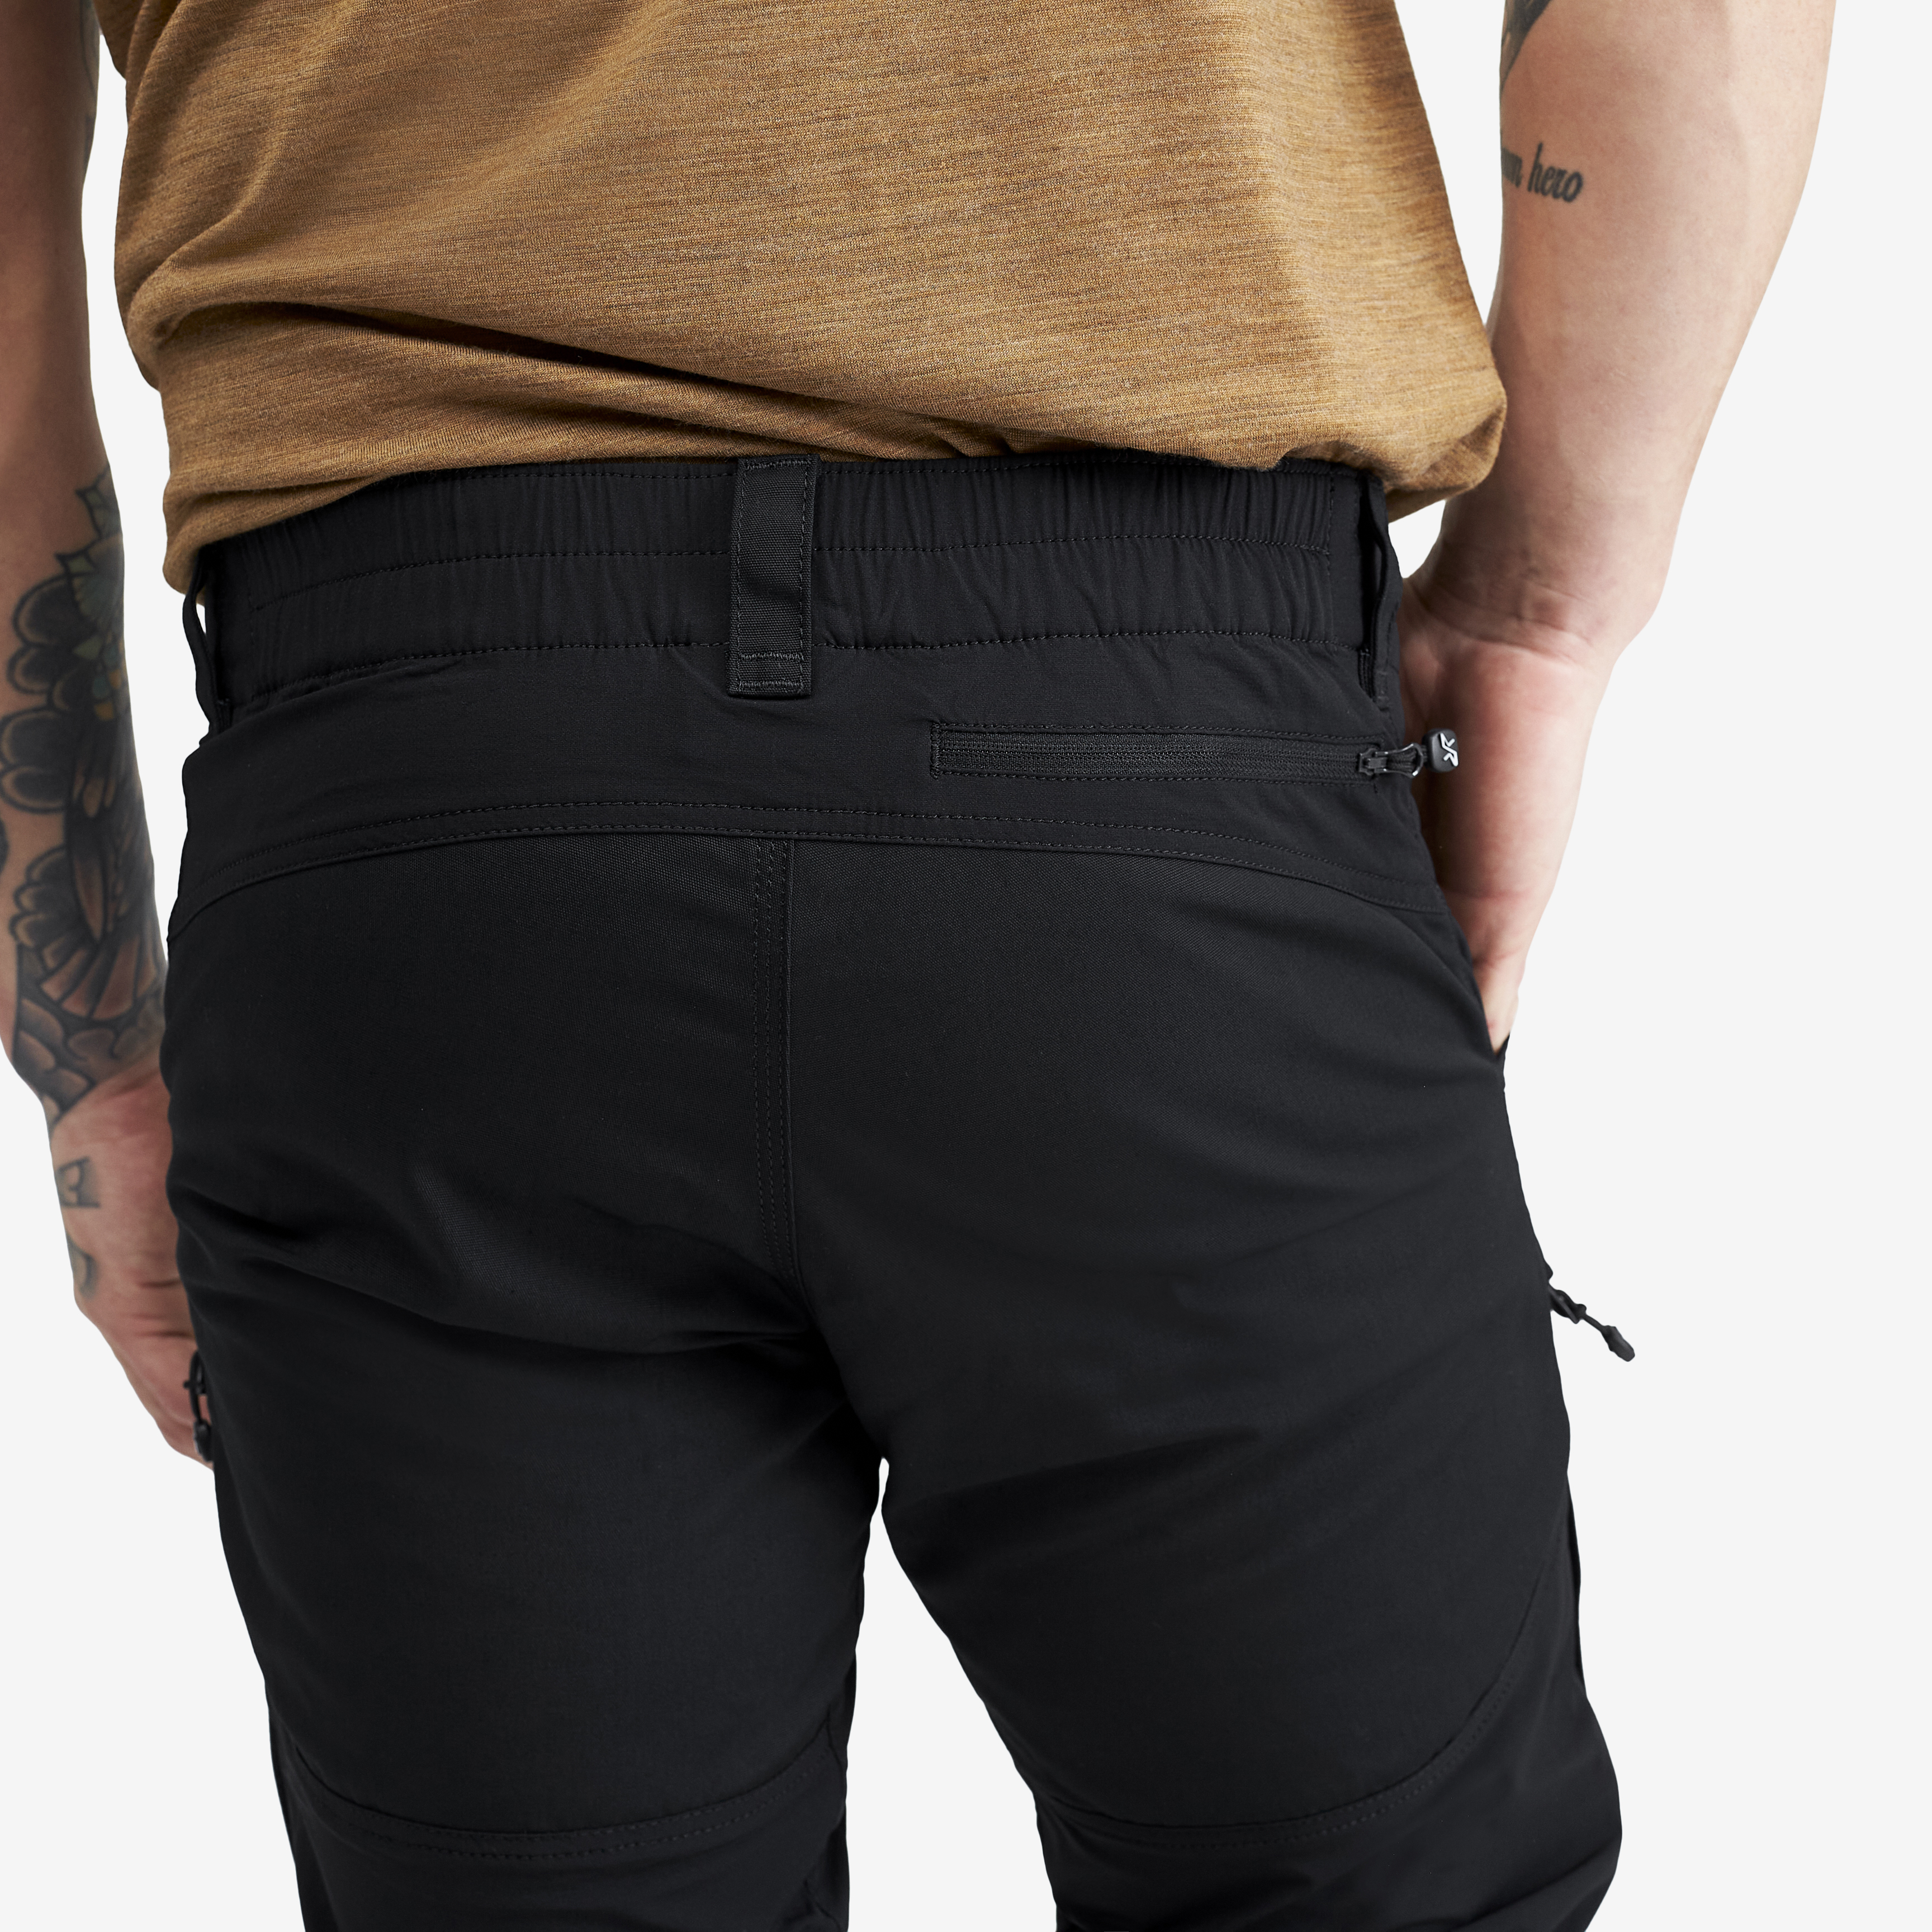 Pantalon Durable pour la randonnée et Autres activités de Plein air RevolutionRace Homme GPX Pro Pants